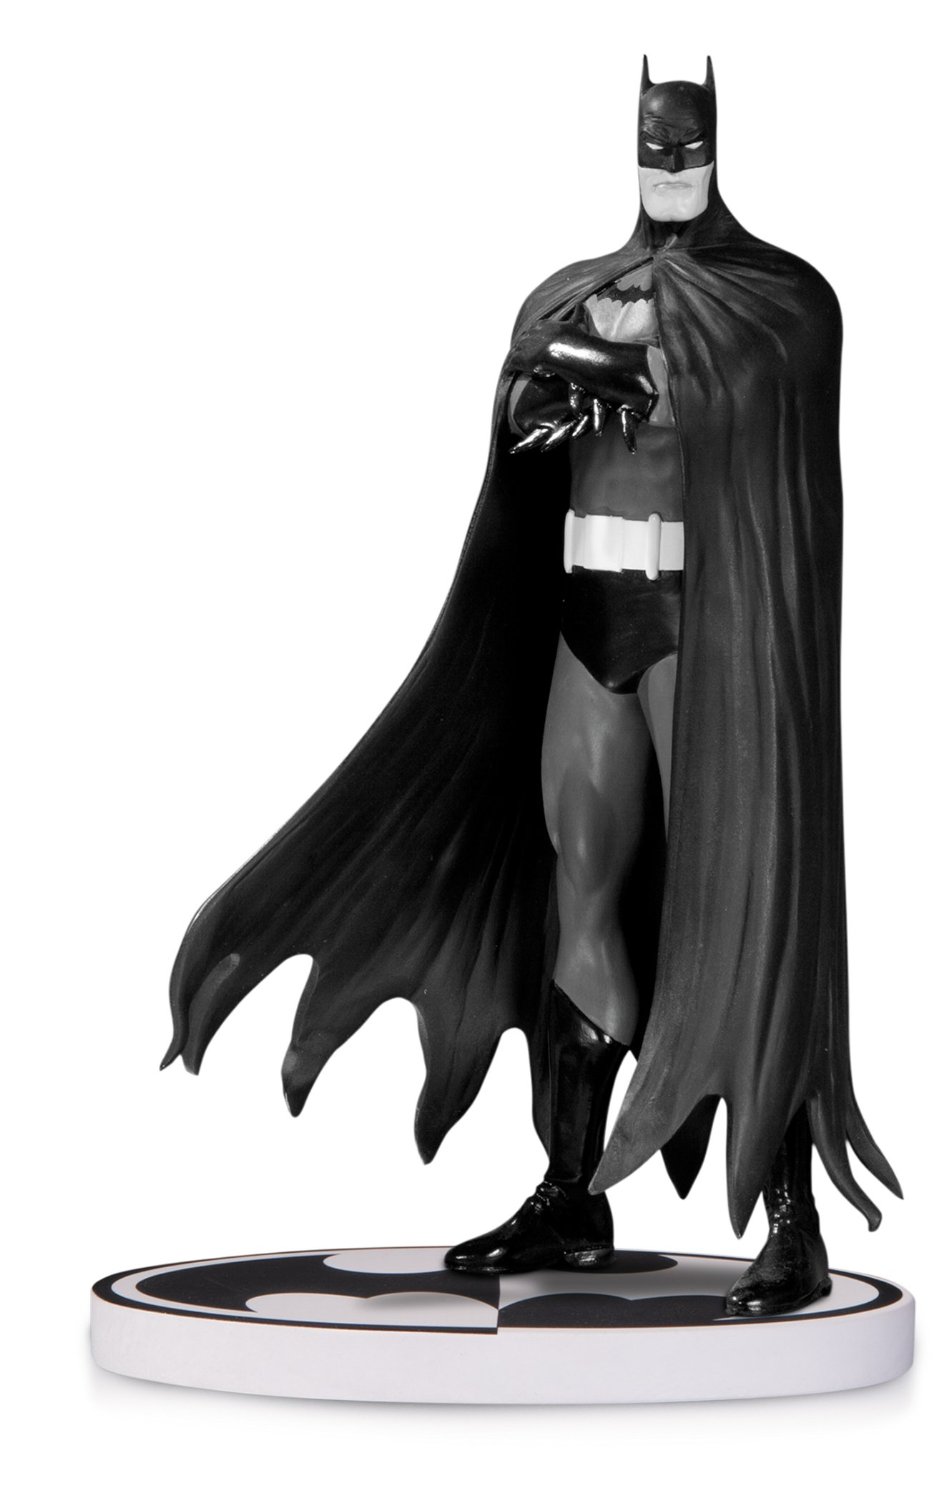 Black & White Batman Figure by Brian Bolland